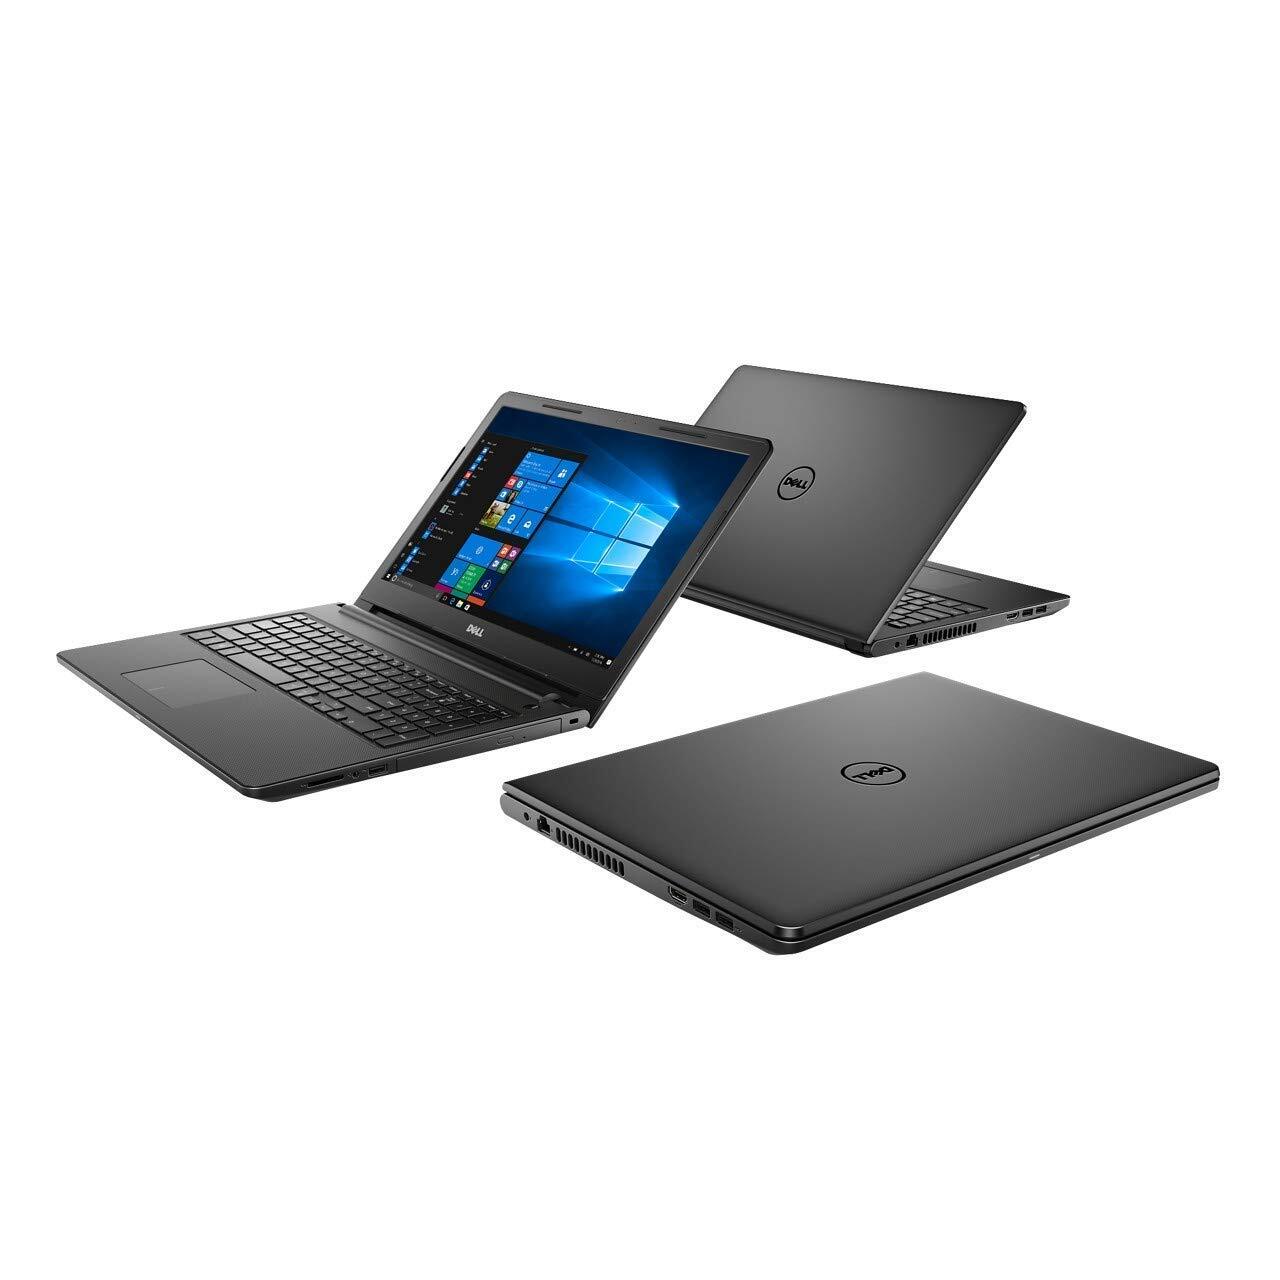 Dell Inspiron 3567 15.6-inch FHD Laptop (7th Gen-Core i3-7020U/4GB/1TB HDD/Windows 10), Black-M000000000279 www.mysocially.com